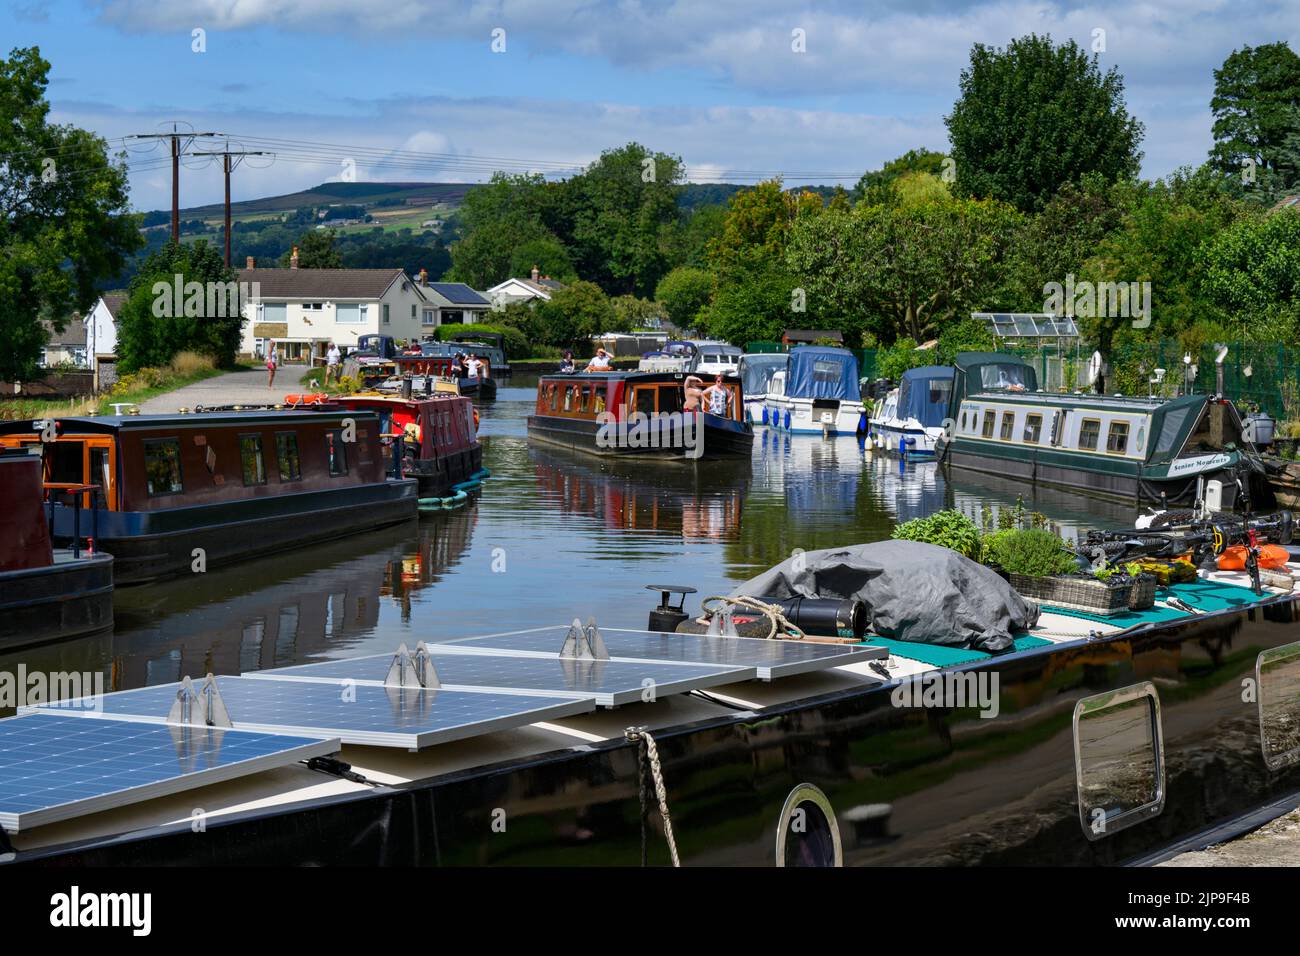 Barcazas en atracaderos concurridos, alquiler de barcos en auto, tramo soleado y pintoresco del canal de Leeds Liverpool y camino de sirga - Bingley, West Yorkshire, Inglaterra, Reino Unido. Foto de stock